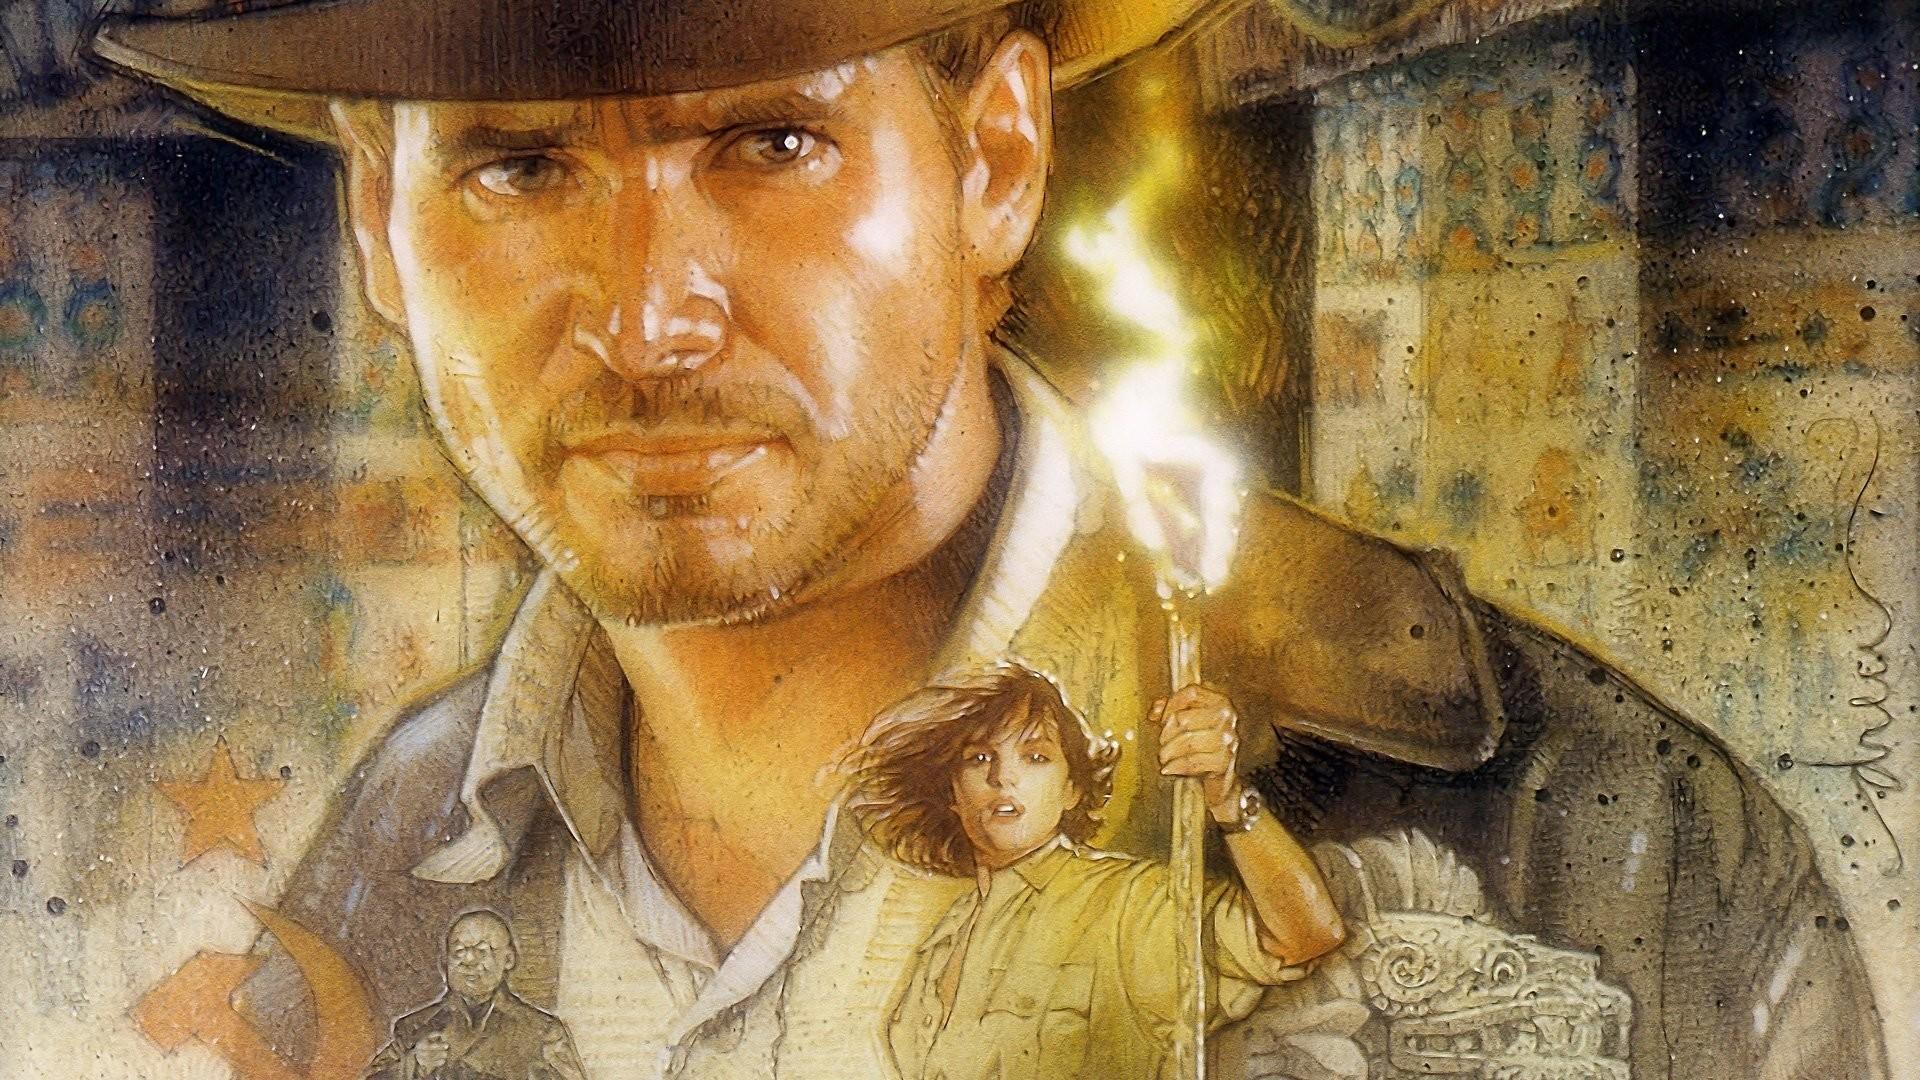 Indiana Jones Wallpaper